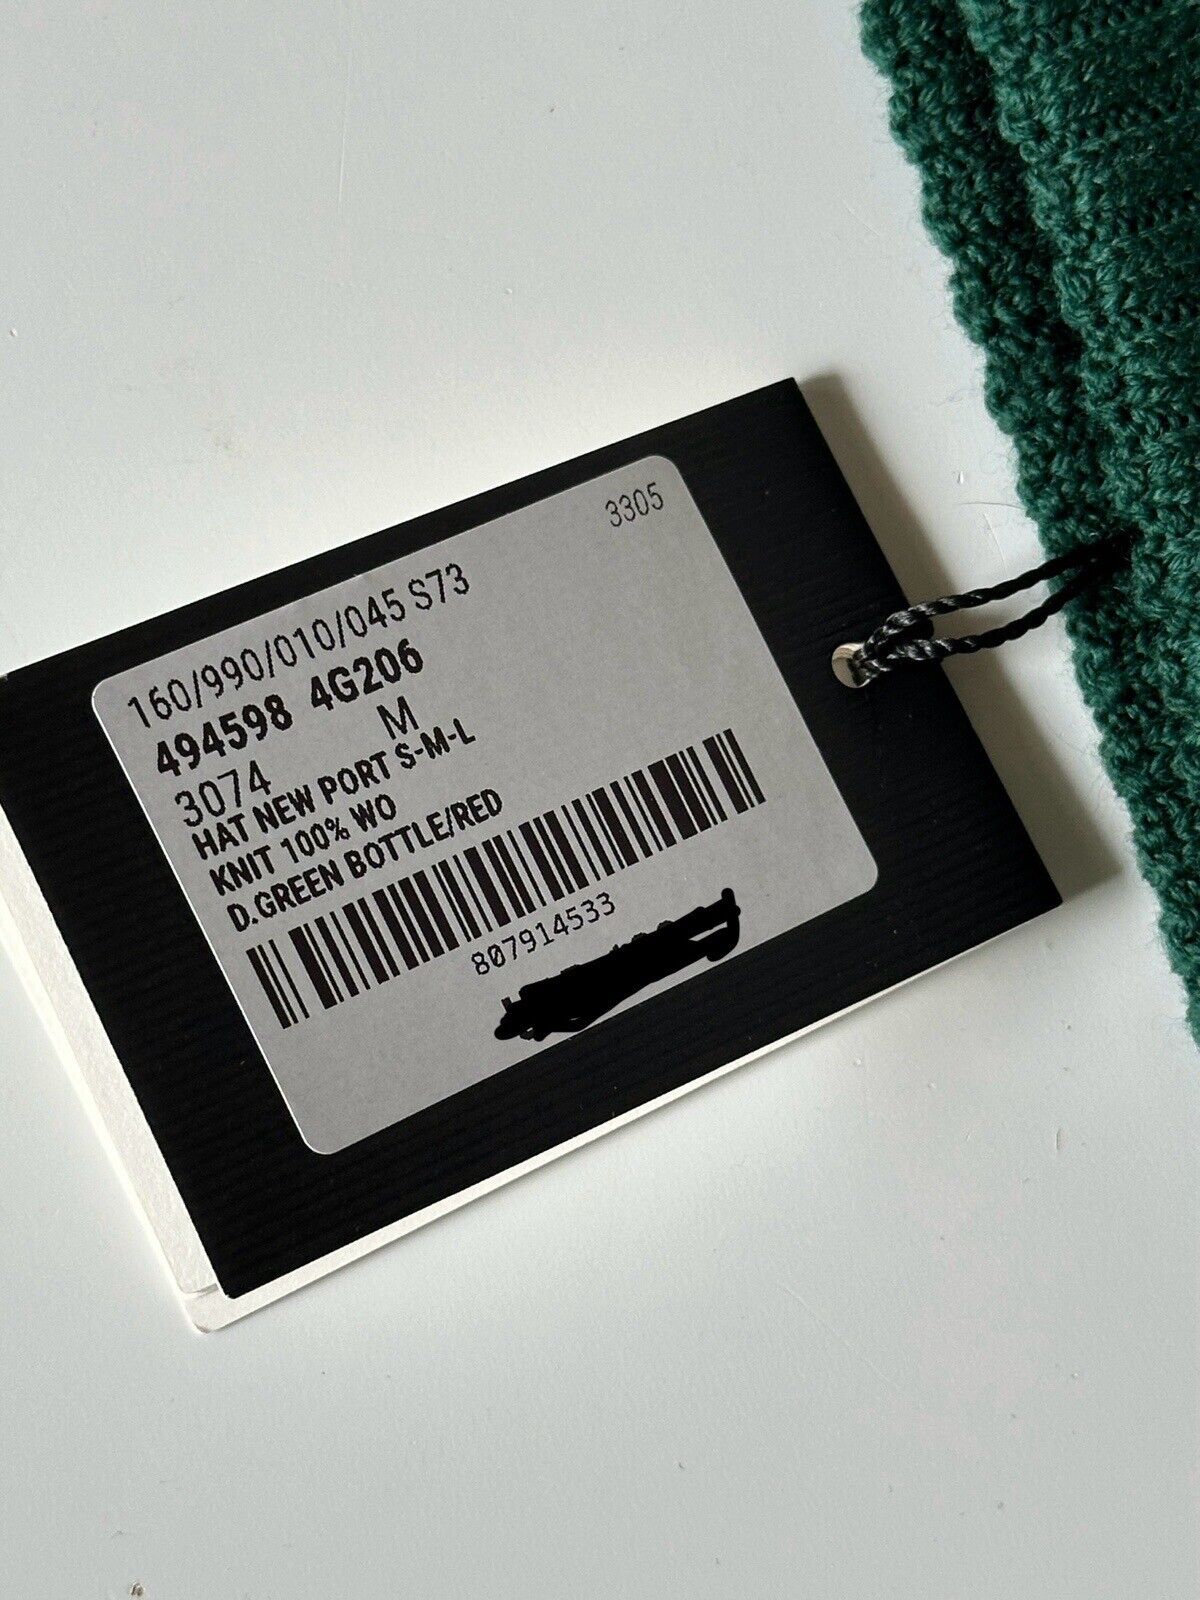 Neu mit Etikett: Gucci Strickmütze aus Wolle in Grün/Rot, mittelgroß (58 cm), hergestellt in Italien, 494598 